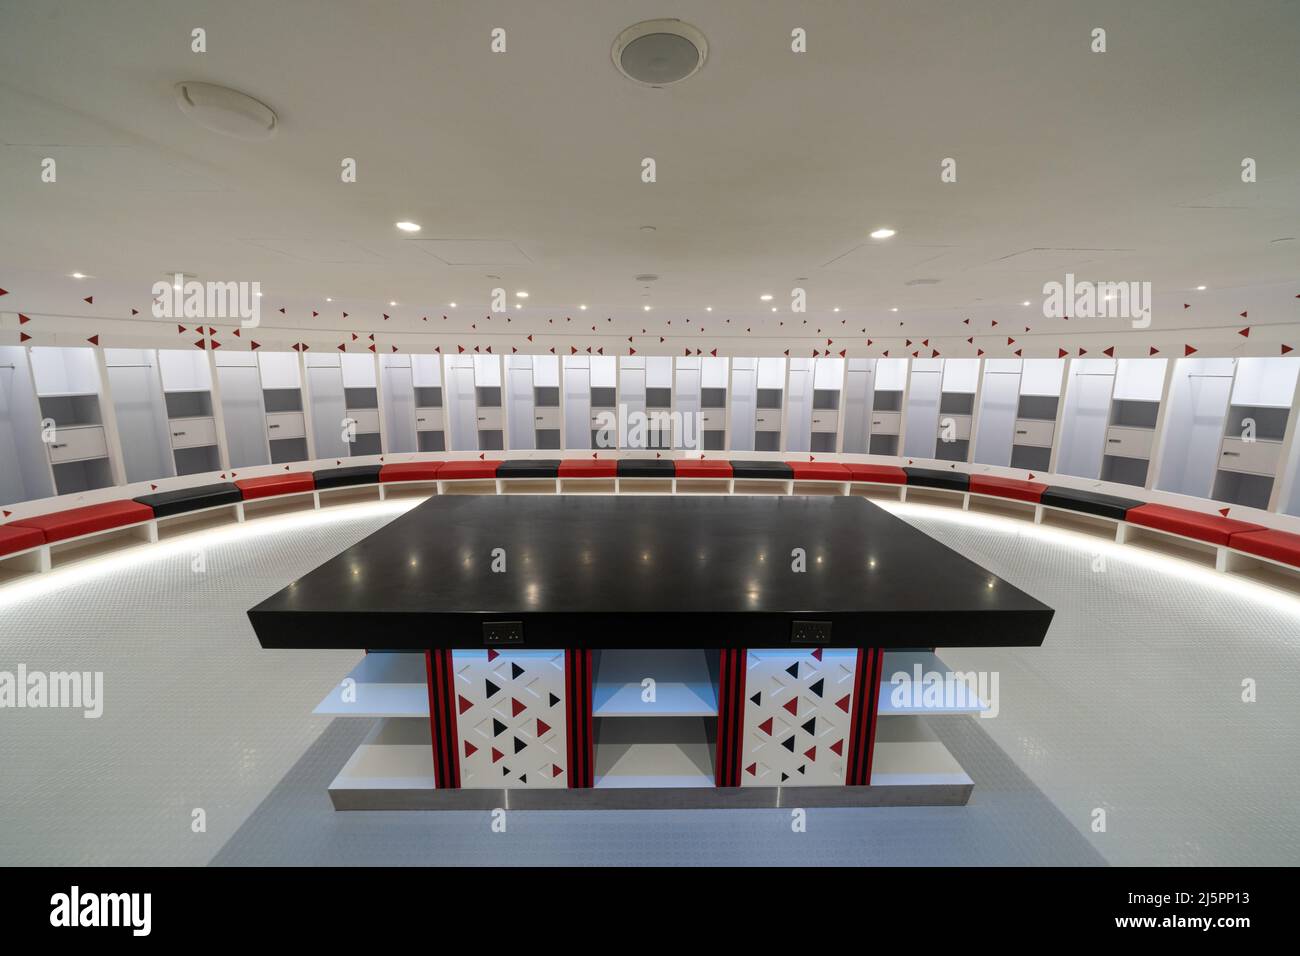 Les joueurs qui se tiennent dans les vestiaires du stade Ahmad Bin Ali, l'un des 8 sites de la coupe du monde de la FIFA, Qatar 2022, accueilleront jusqu'à 40 000 fans lors des matchs jusqu'au quart de finale. Banque D'Images